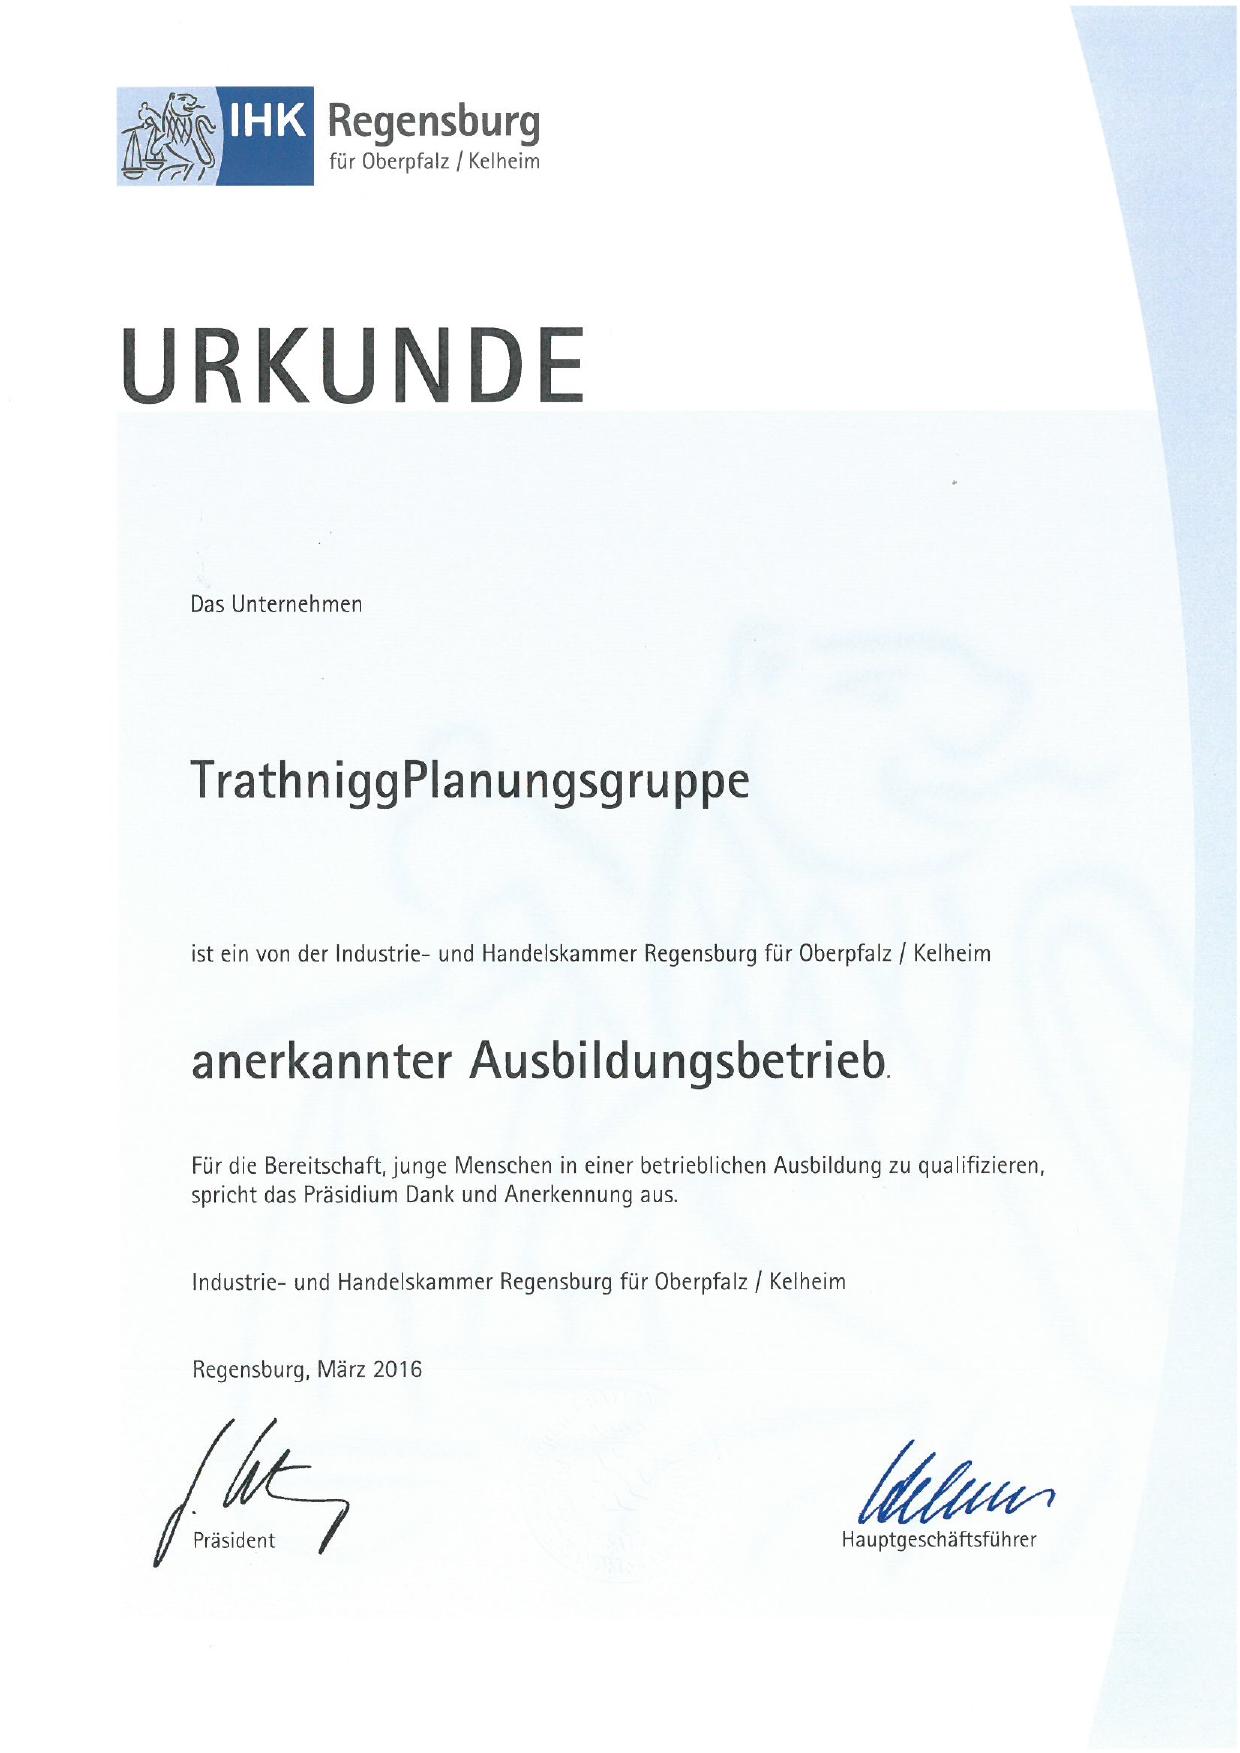 Dokument, zur Auszeichnung als anerkannter Ausbildungsbetrieb.